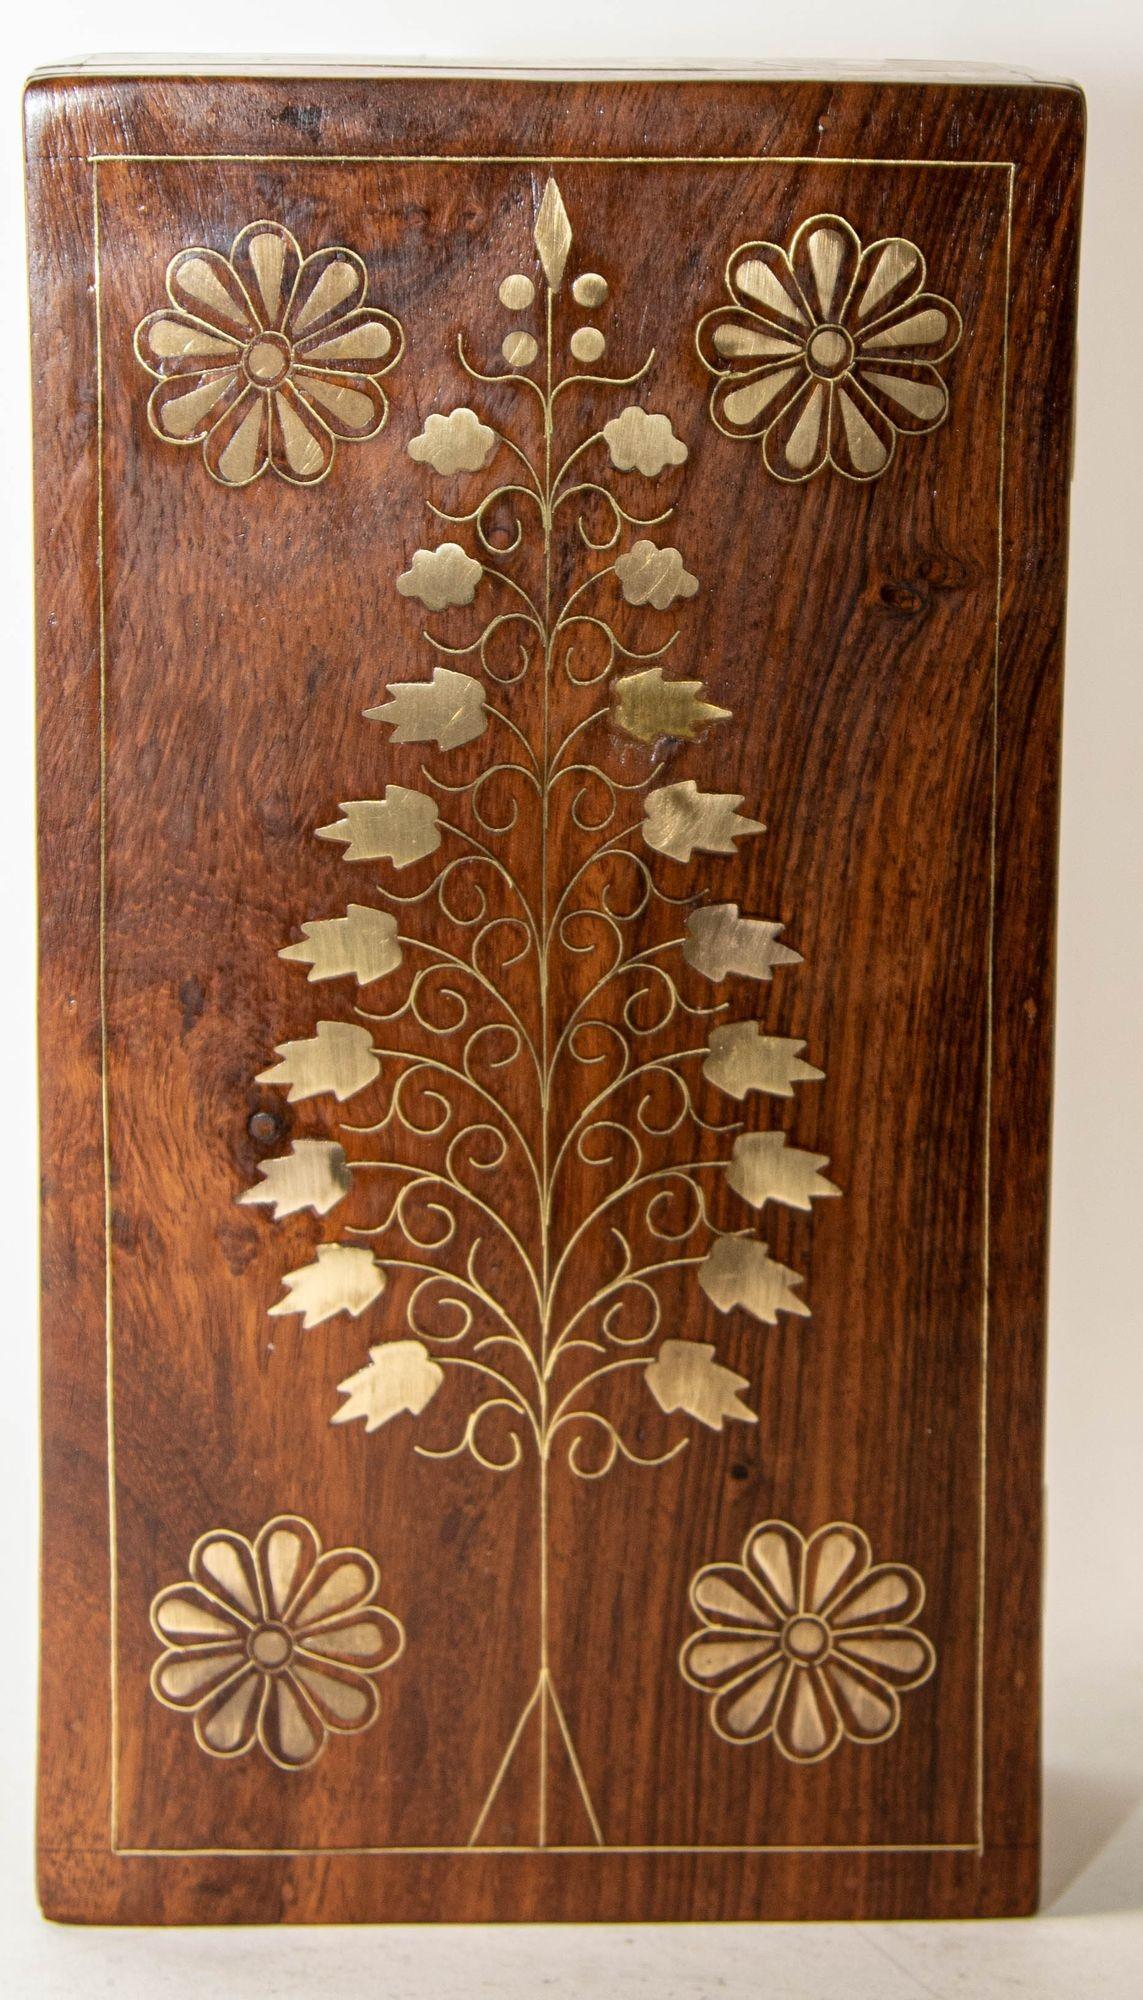 1950s Antique Anglo Indian Victorian Style Rosewood Box with Brass Tree of Life Symbol Inlaid. Une élégante boîte en bois de rose de style victorien, de forme rectangulaire.Une belle boîte à bijoux en bois de rose incrusté, de style Coloni. Fabriqué